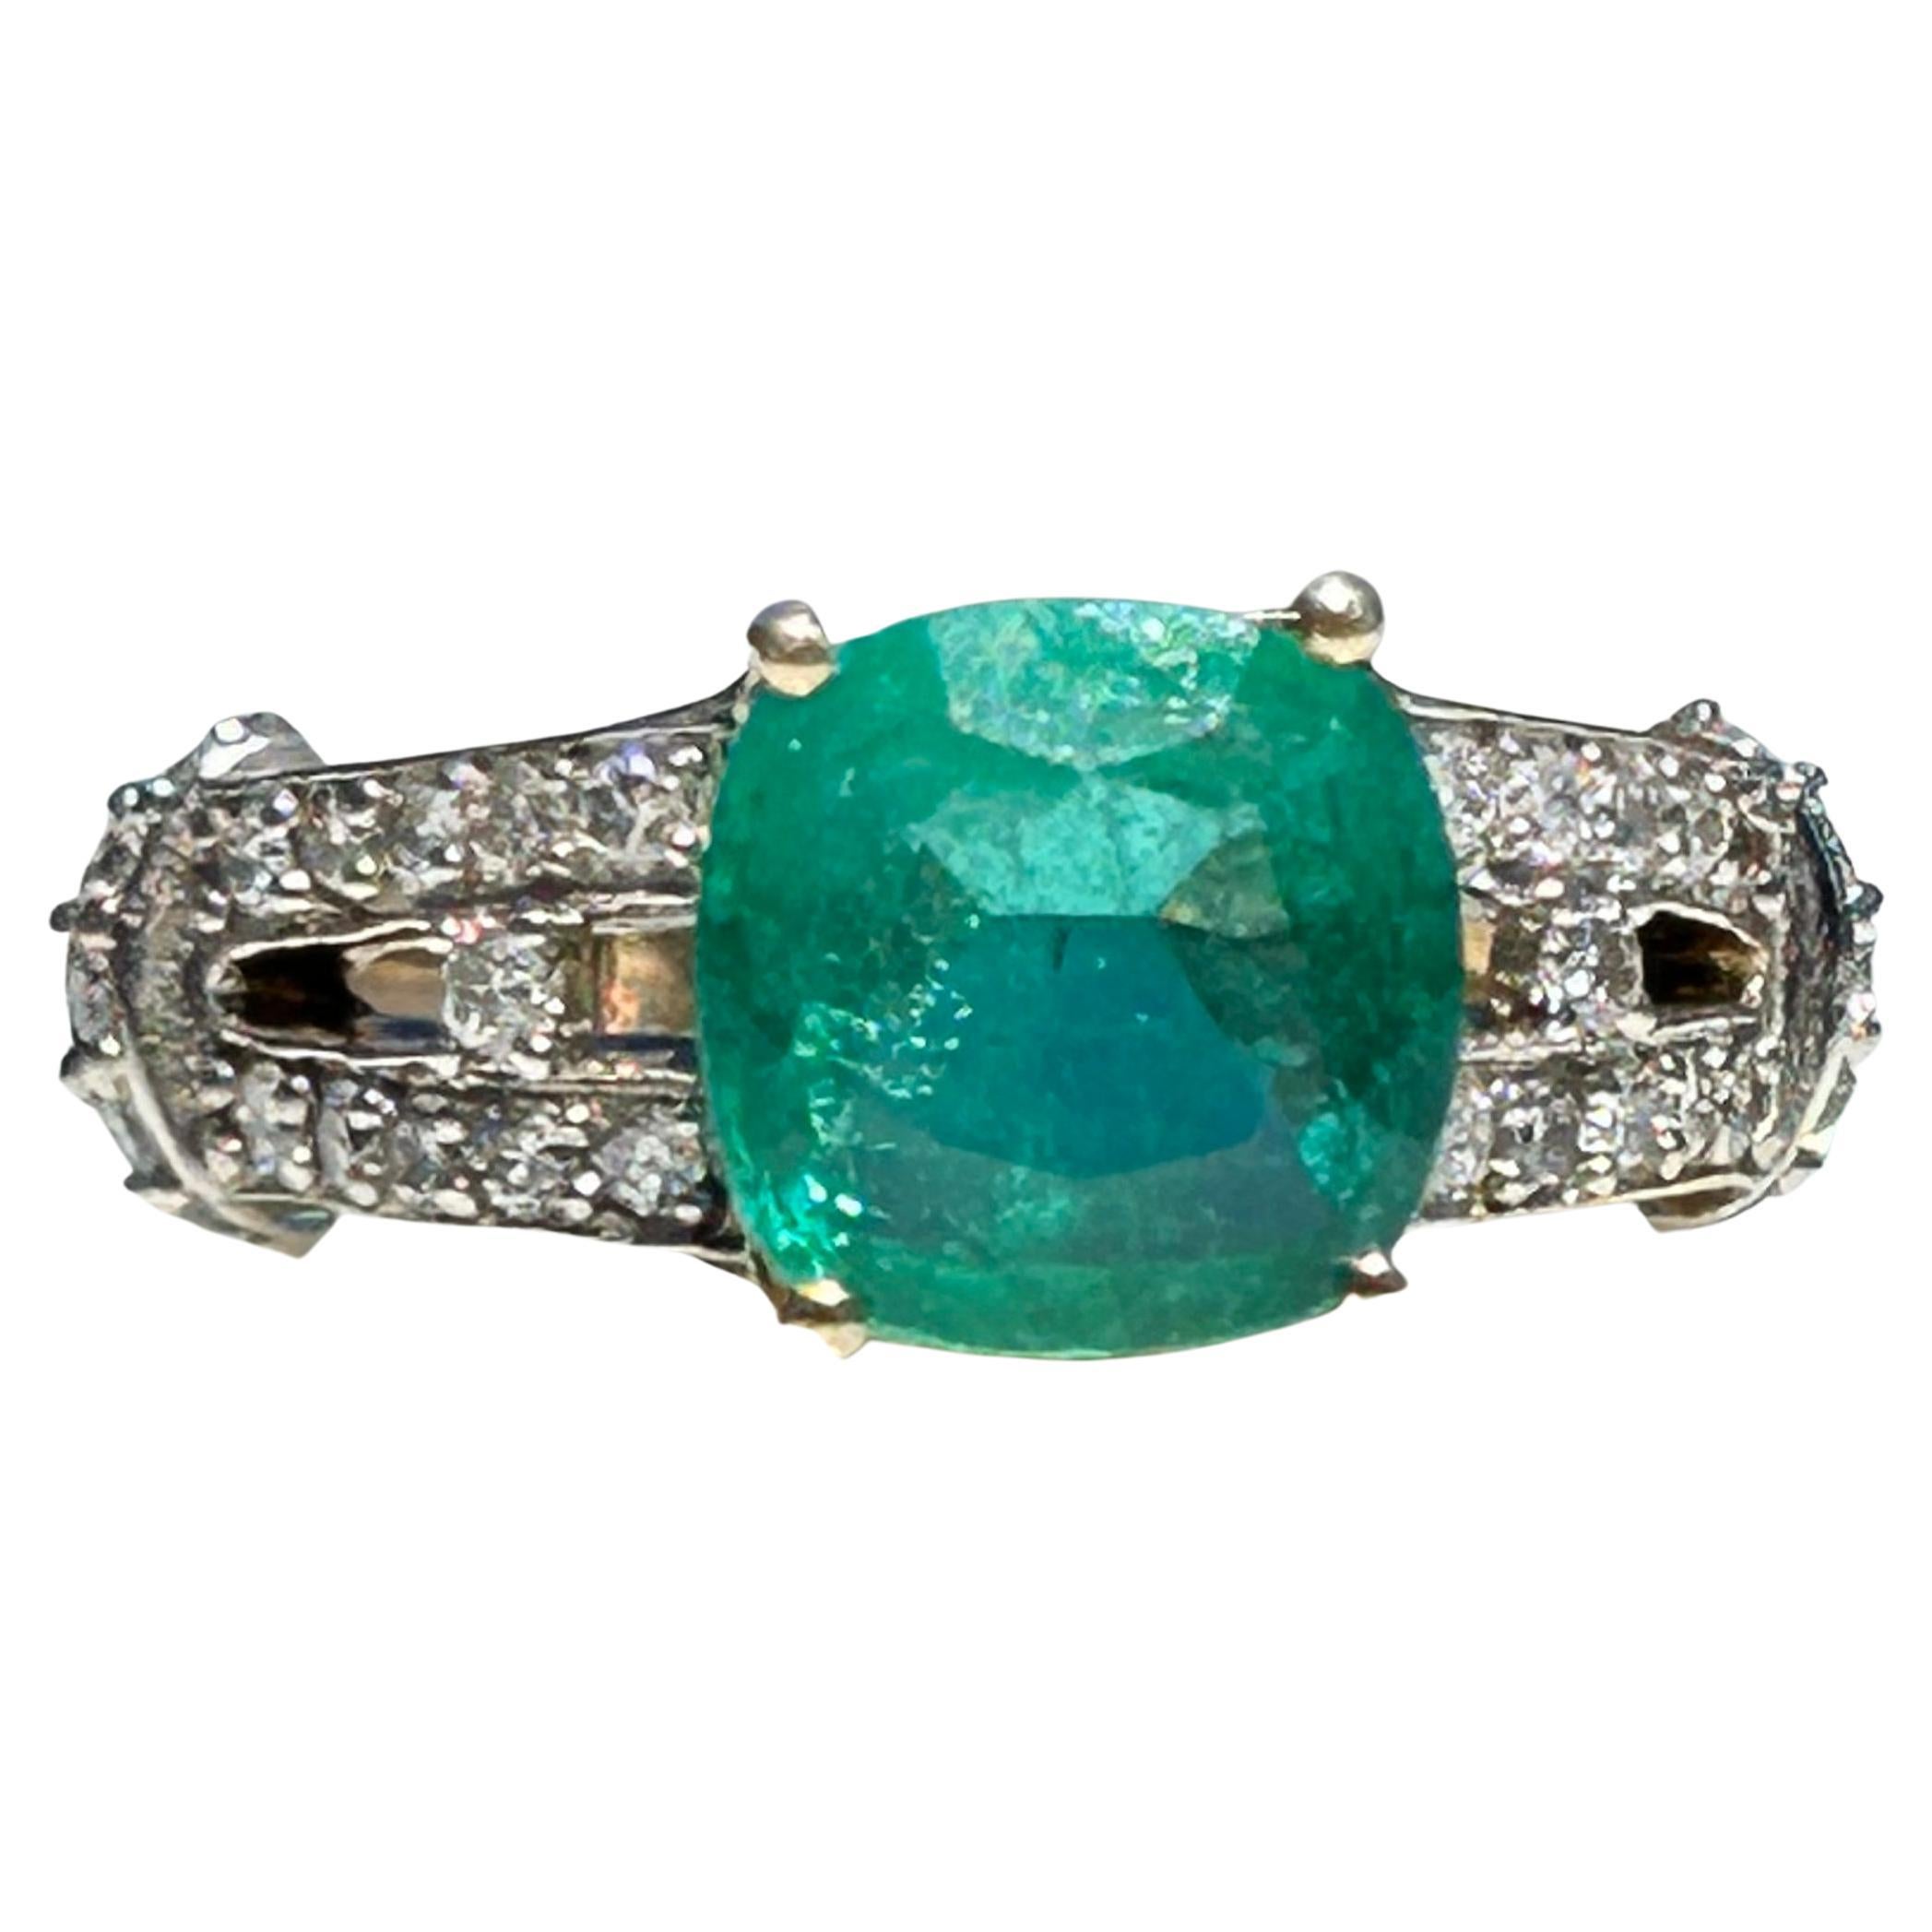 Ein wunderschöner, glamouröser Ring mit 2,5 Karat kissenförmigem natürlichem Smaragd und Diamanten mit mittlerer bis starker Sättigung und Transparenz. Minimale Einschlüsse, die mit bloßem Auge sichtbar sind (mäßige Einschlüsse unter